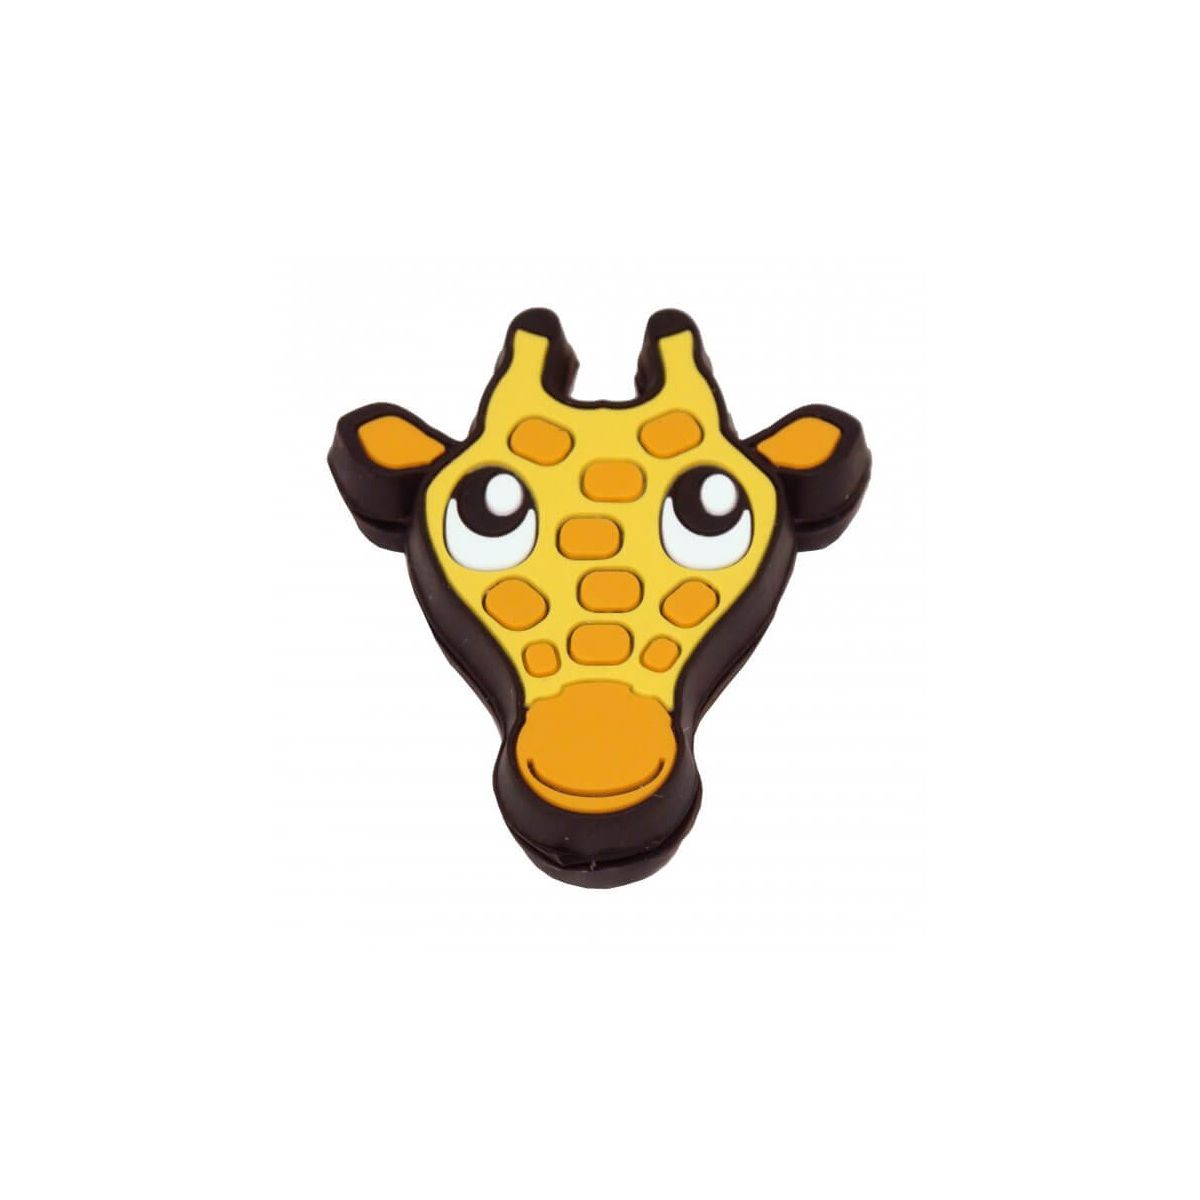 Giraffe Vibration Dampener H184